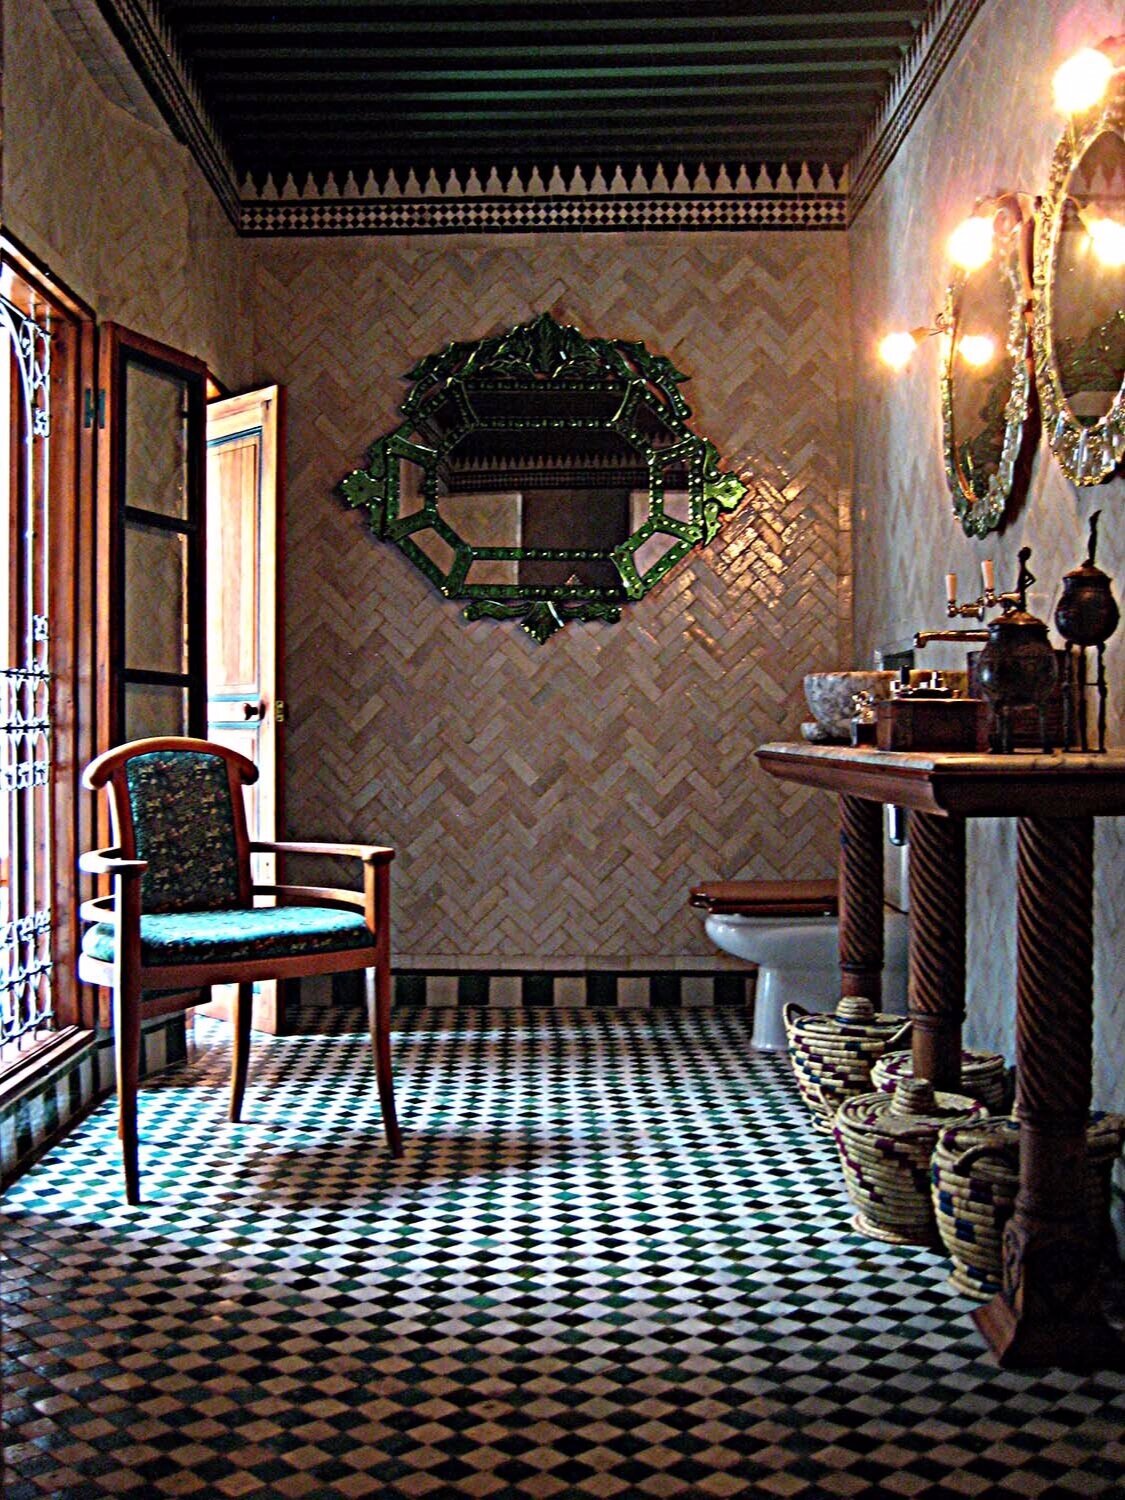  Romantic, maximalist interior design by Tamerlane's Daughters using museum-quality antique textiles 